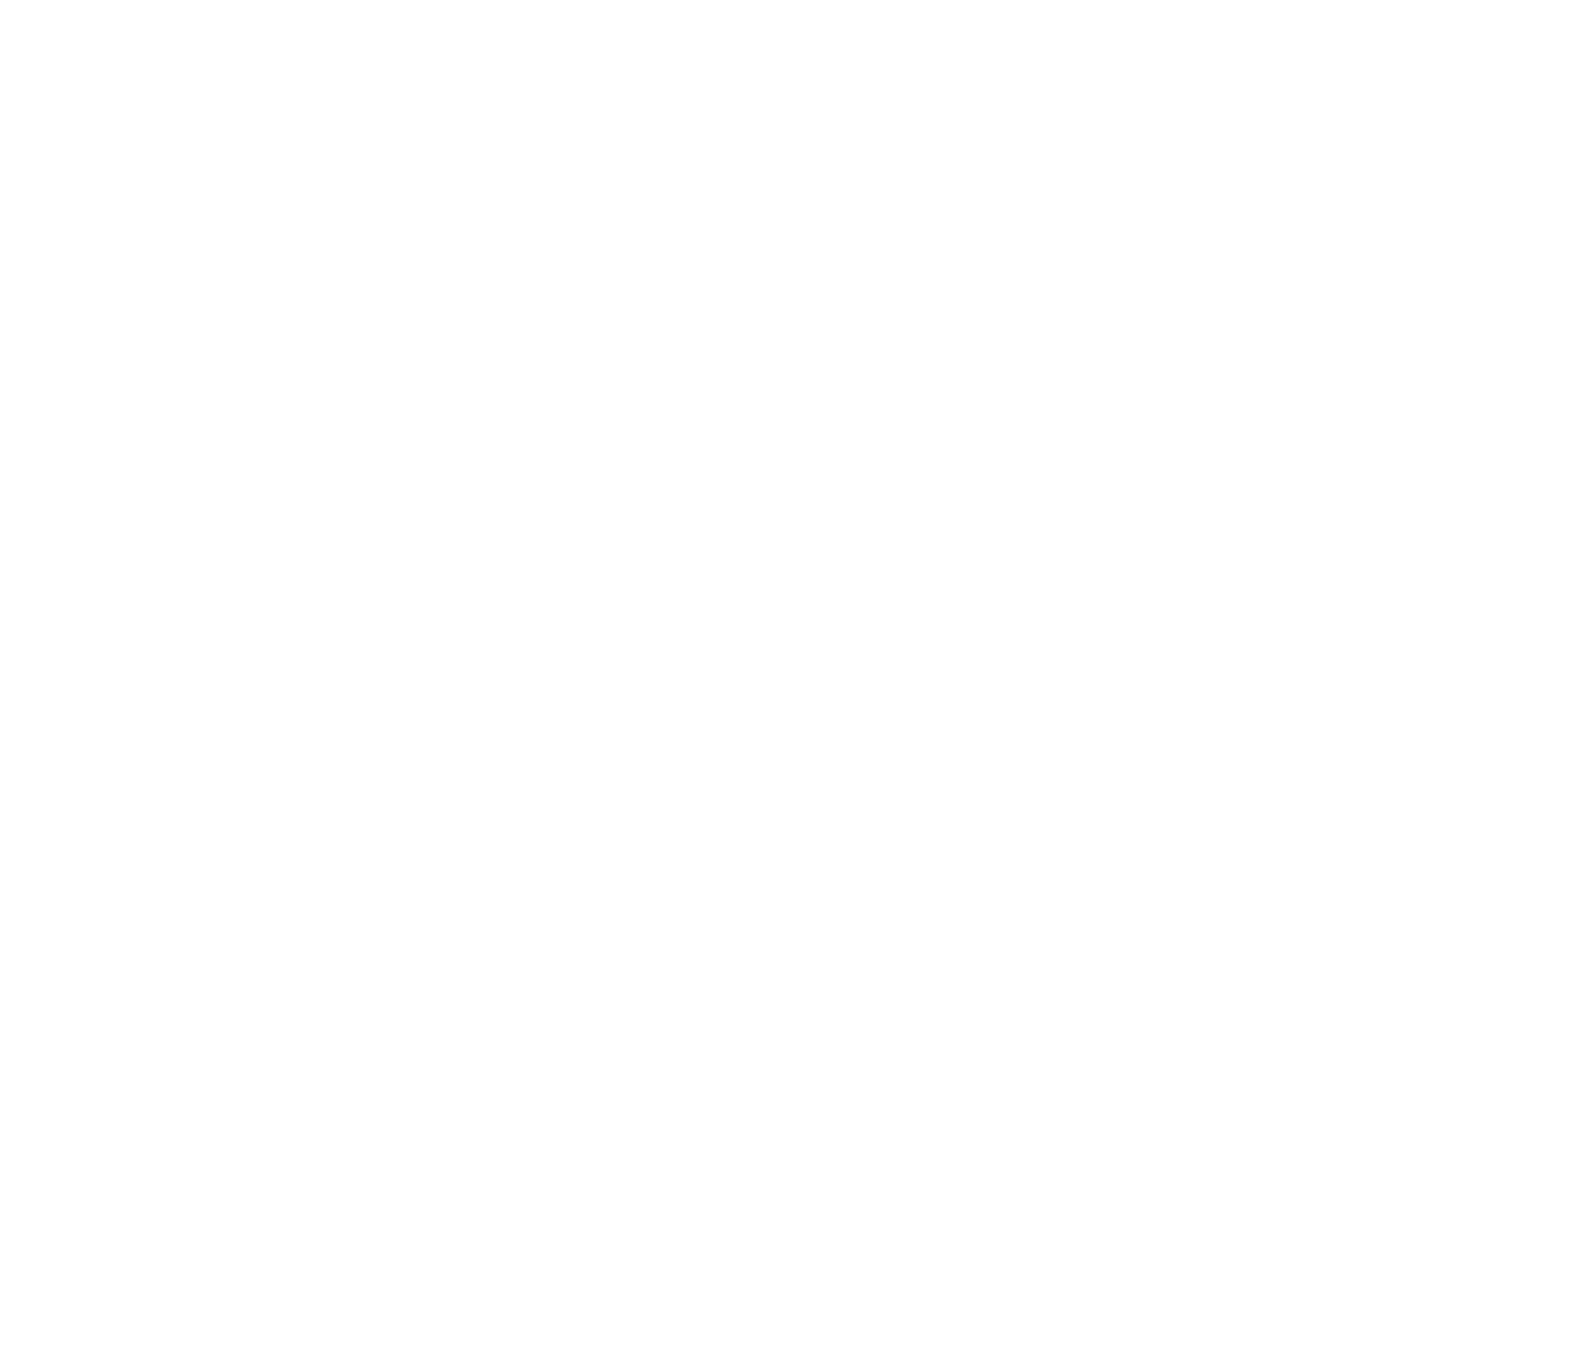 United Utilities logo pour fonds sombres (PNG transparent)